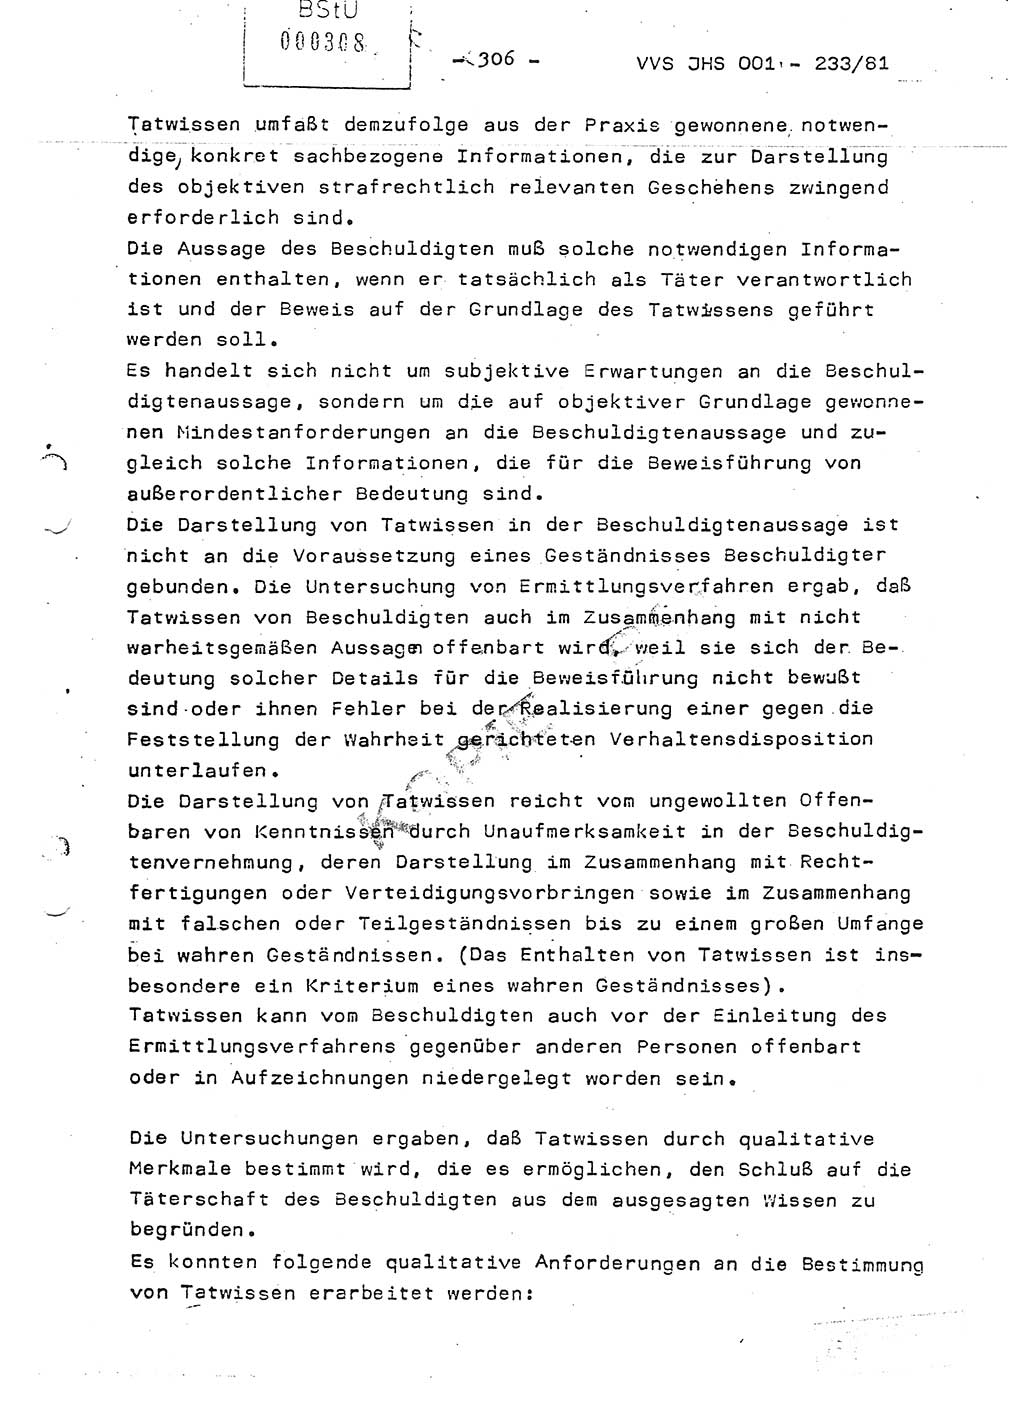 Dissertation Oberstleutnant Horst Zank (JHS), Oberstleutnant Dr. Karl-Heinz Knoblauch (JHS), Oberstleutnant Gustav-Adolf Kowalewski (HA Ⅸ), Oberstleutnant Wolfgang Plötner (HA Ⅸ), Ministerium für Staatssicherheit (MfS) [Deutsche Demokratische Republik (DDR)], Juristische Hochschule (JHS), Vertrauliche Verschlußsache (VVS) o001-233/81, Potsdam 1981, Blatt 306 (Diss. MfS DDR JHS VVS o001-233/81 1981, Bl. 306)